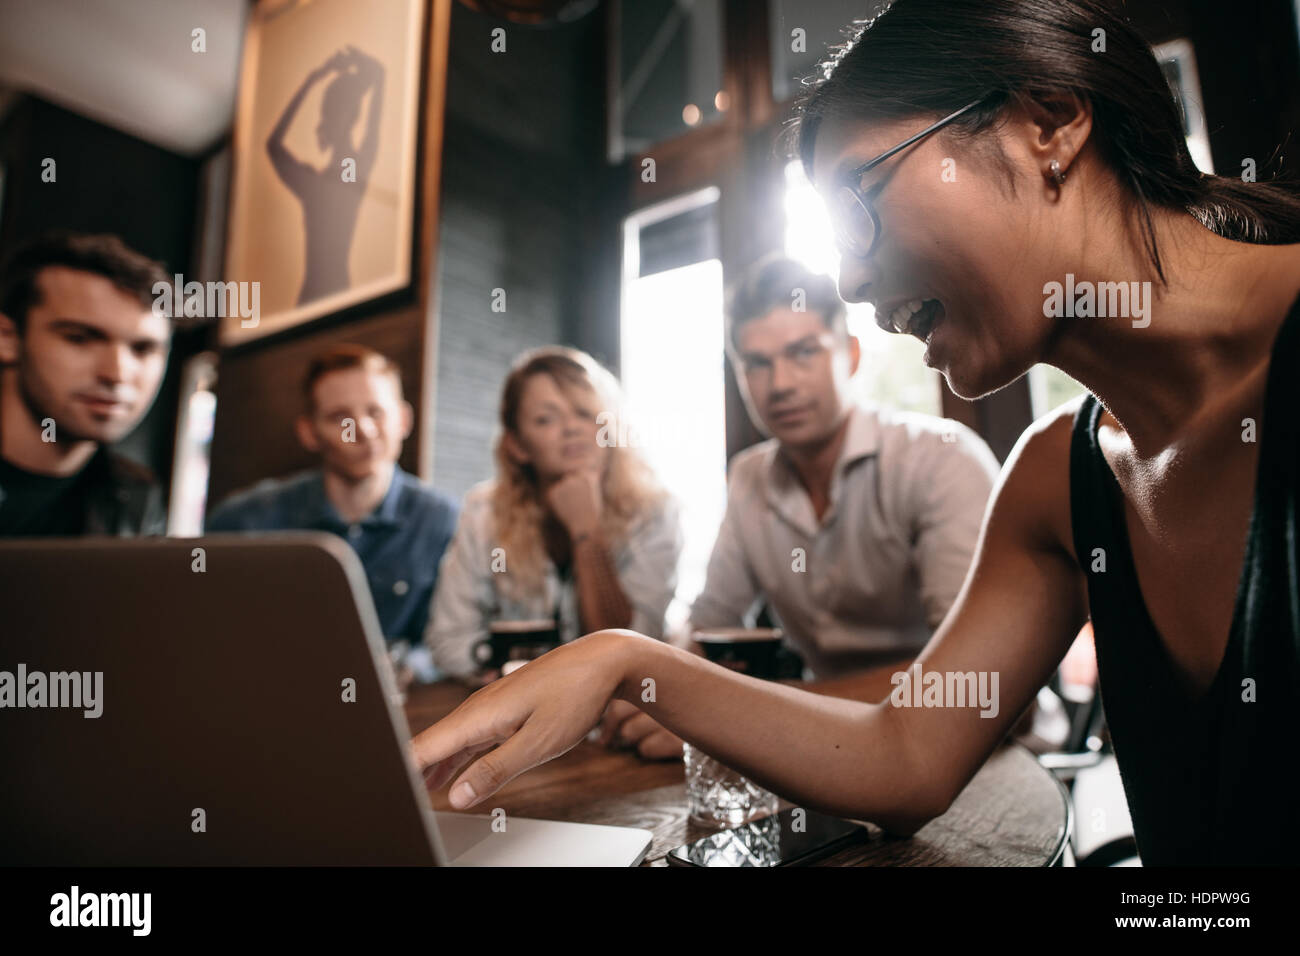 Junge Frau auf Laptop zeigen und diskutieren mit Freunden. Gruppe von Jugendlichen im Café Blick auf Laptop-Computer. Stockfoto